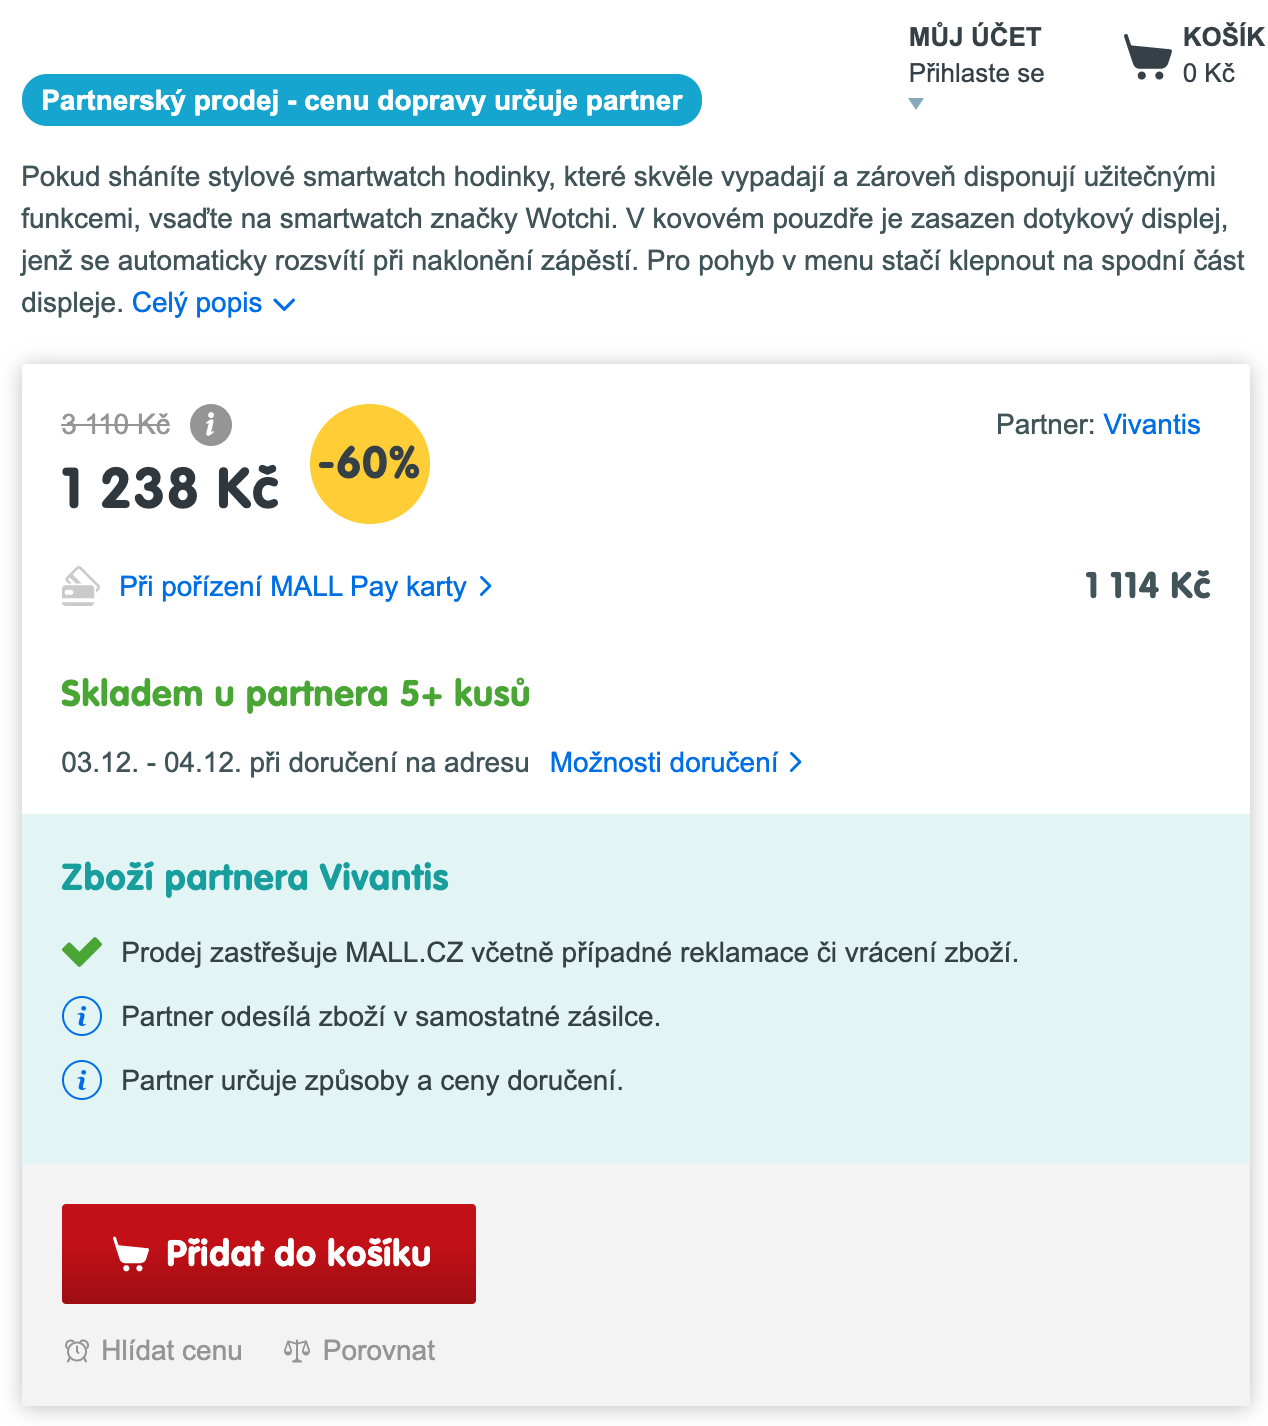 snímek obrazovky produktu ve výprodeji na webu mall.cz z 3110 Kč na 1238 Kč s označením partnerský prodej